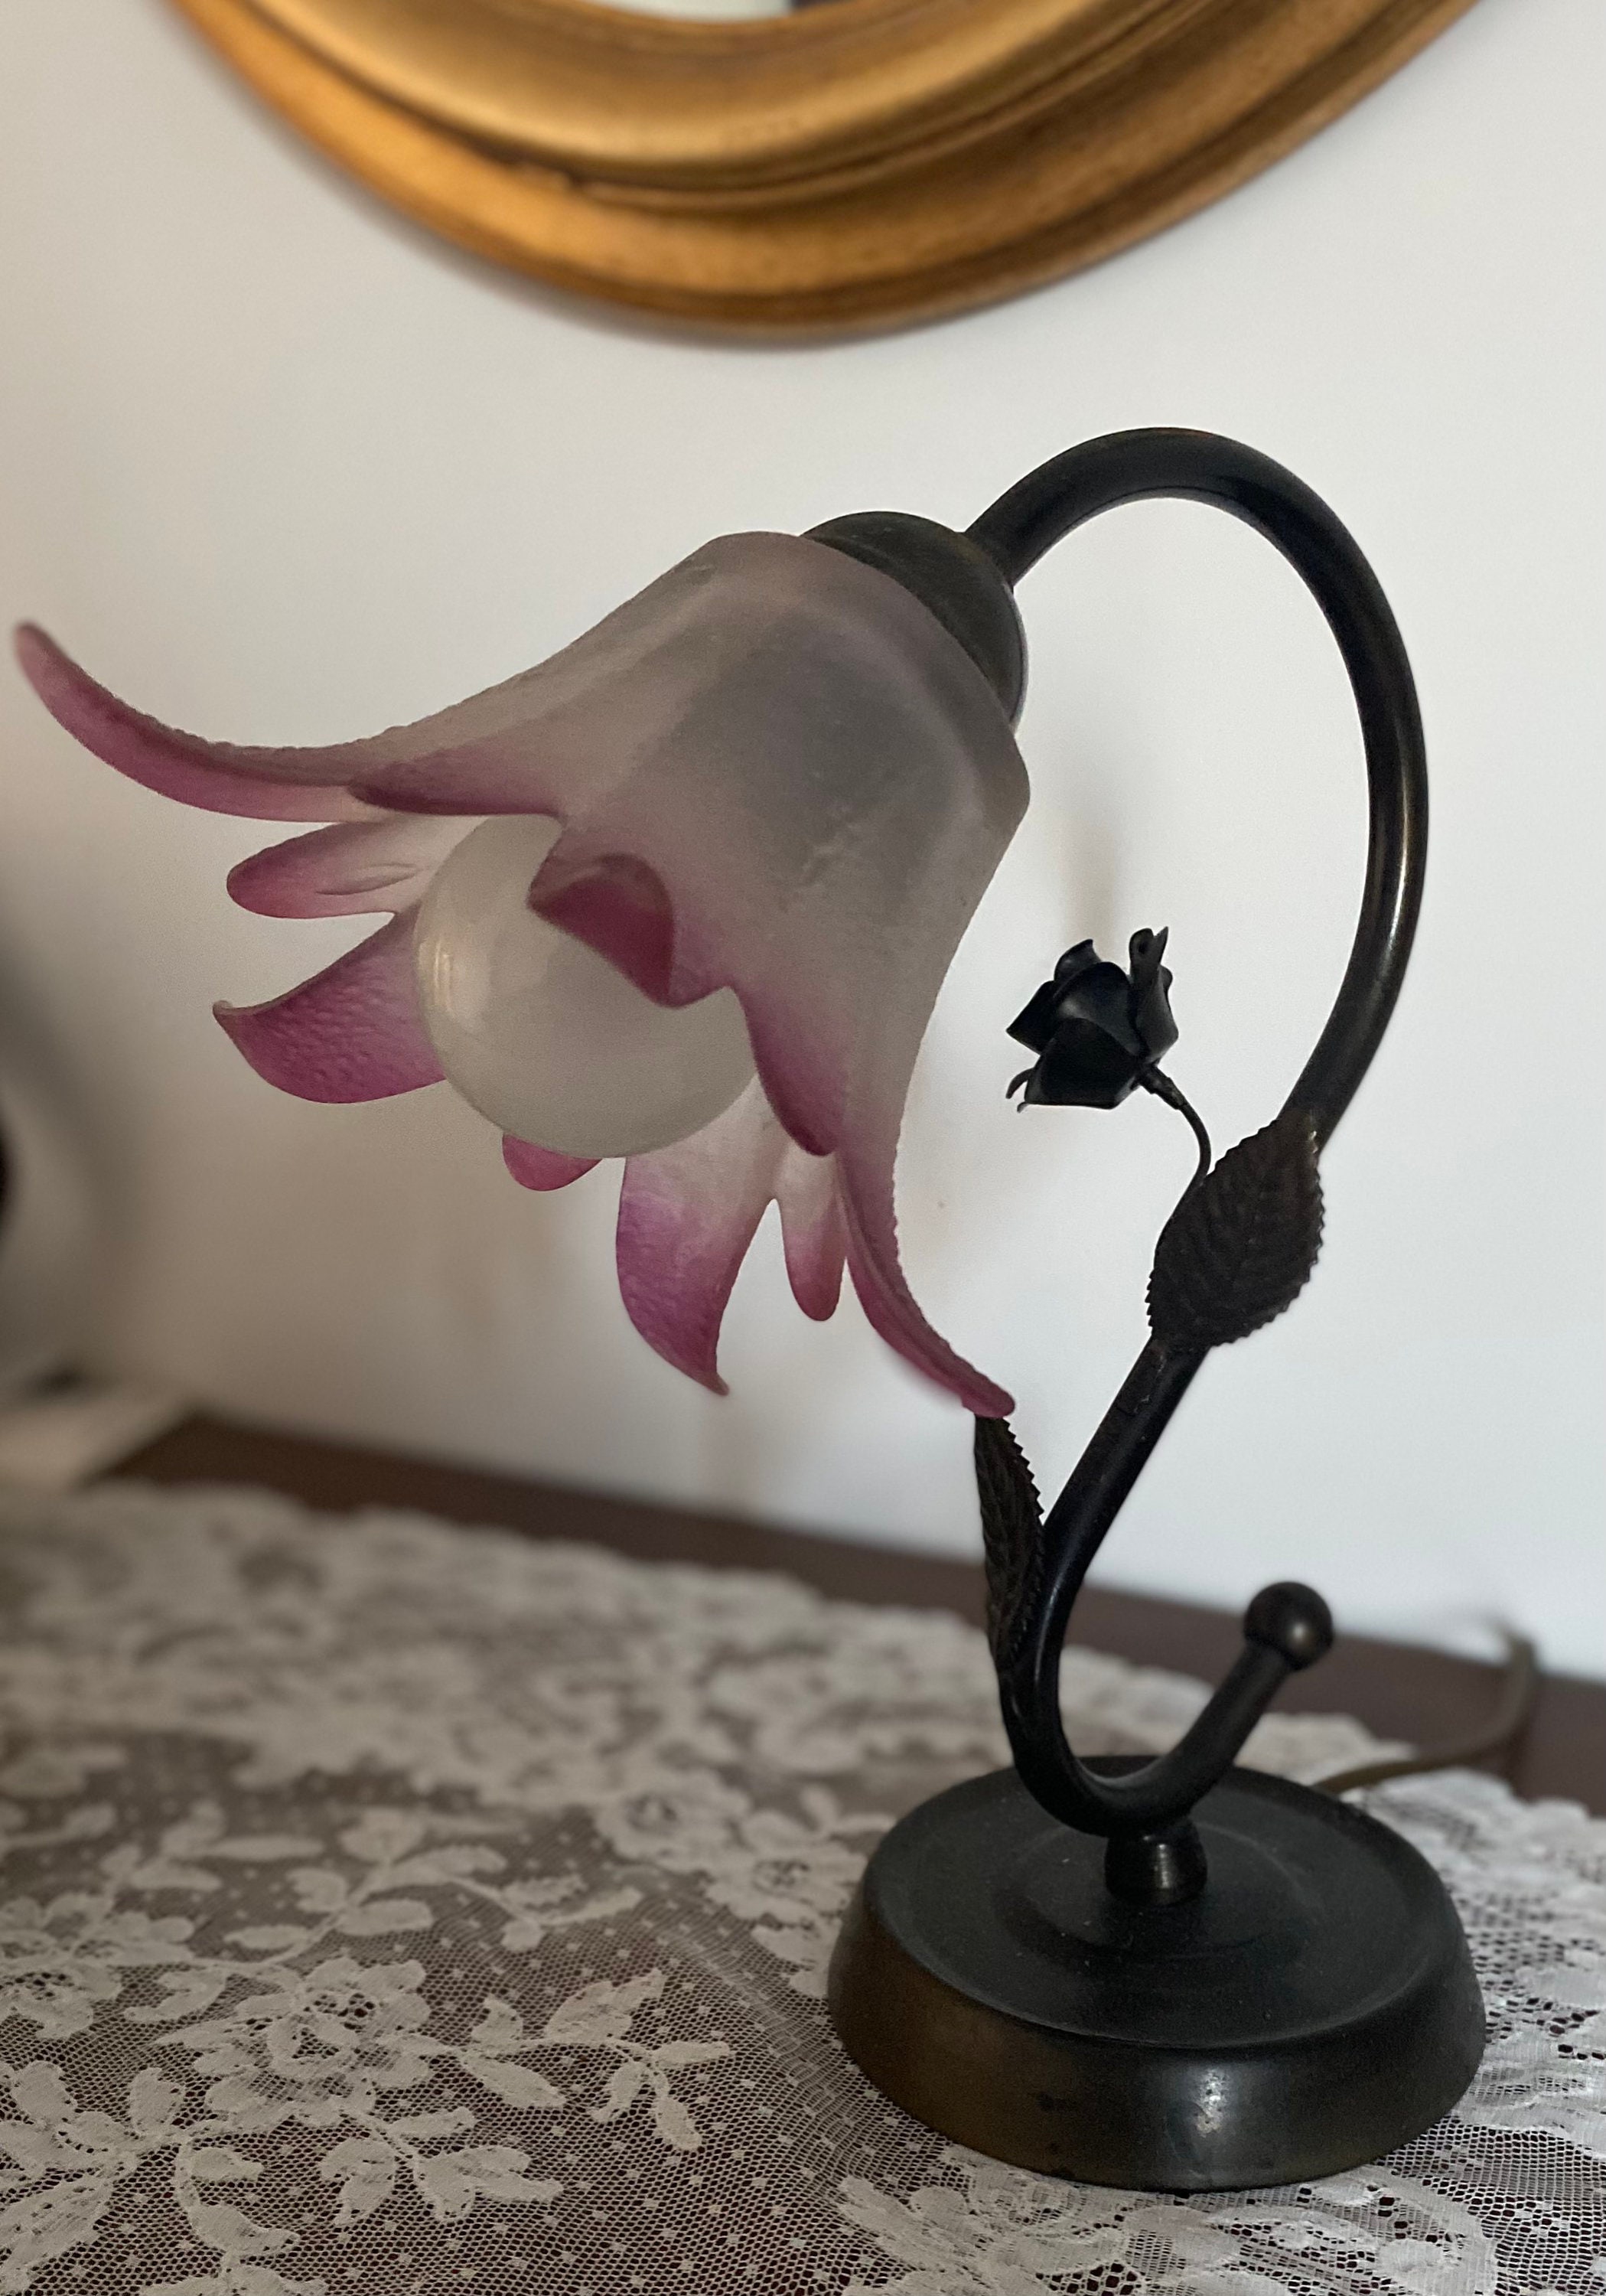 Lampe de Table ou Bureau en Métal Noir, Style 1930. Tulipe Pâte Verre, Blanche, Pointes Violettes. V